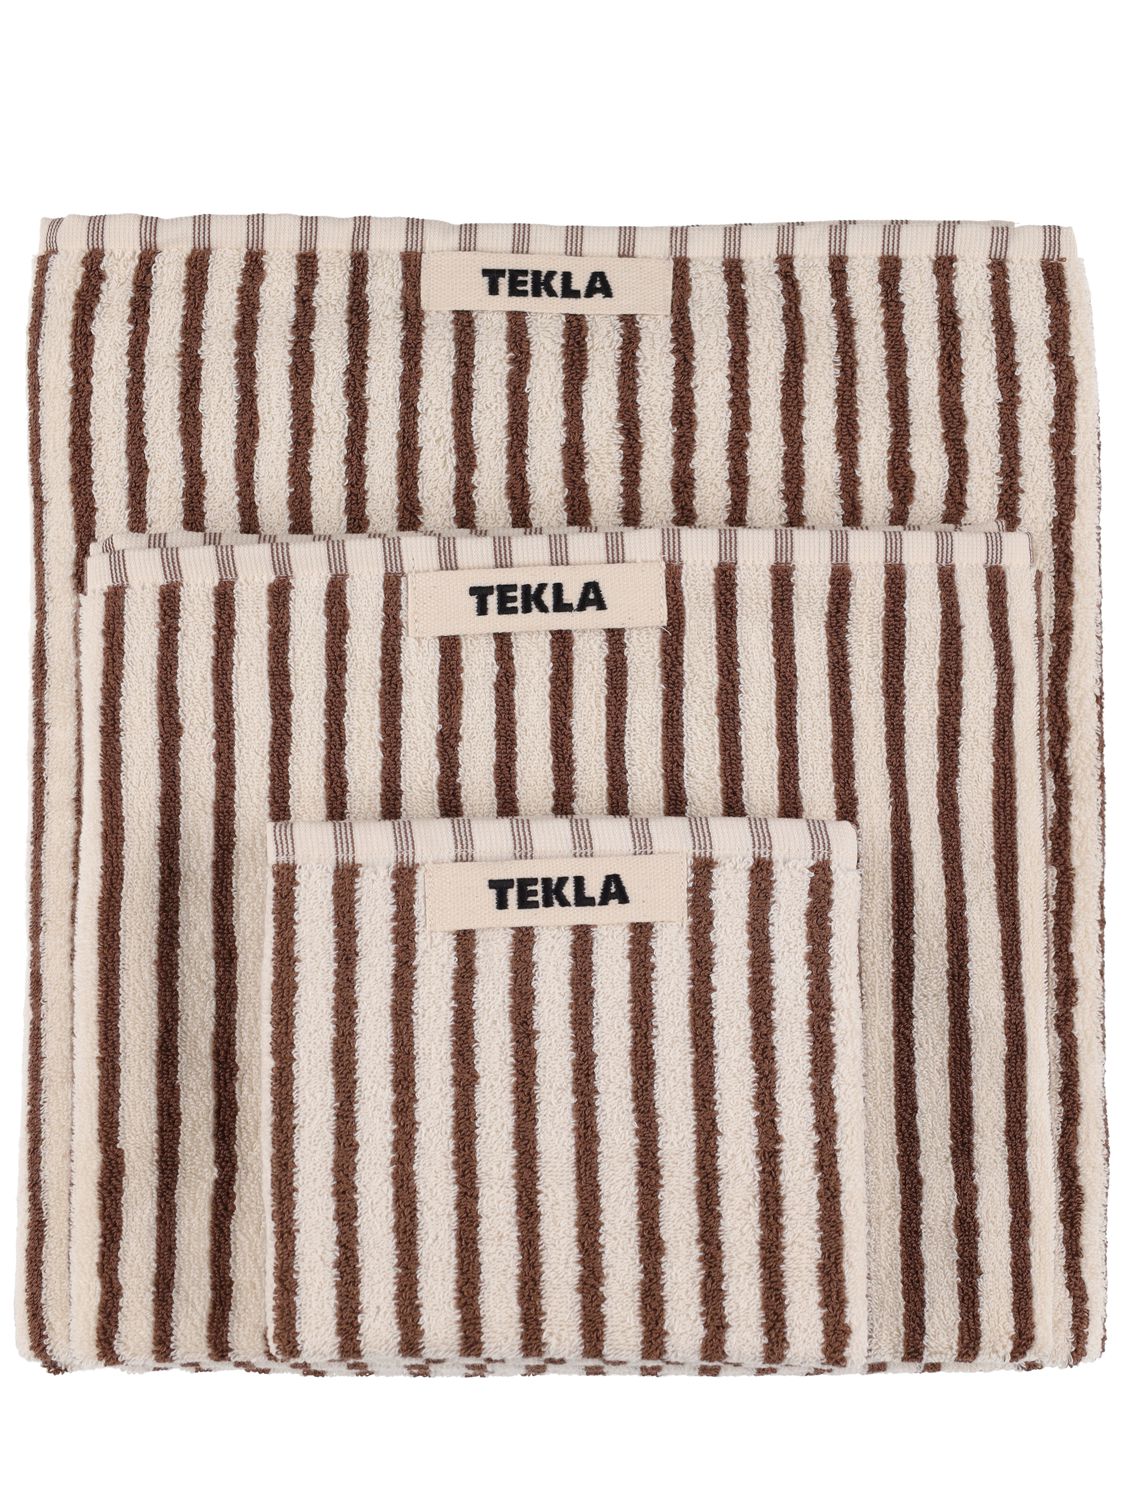 Tekla 有机棉毛巾3条套装 In White,brown